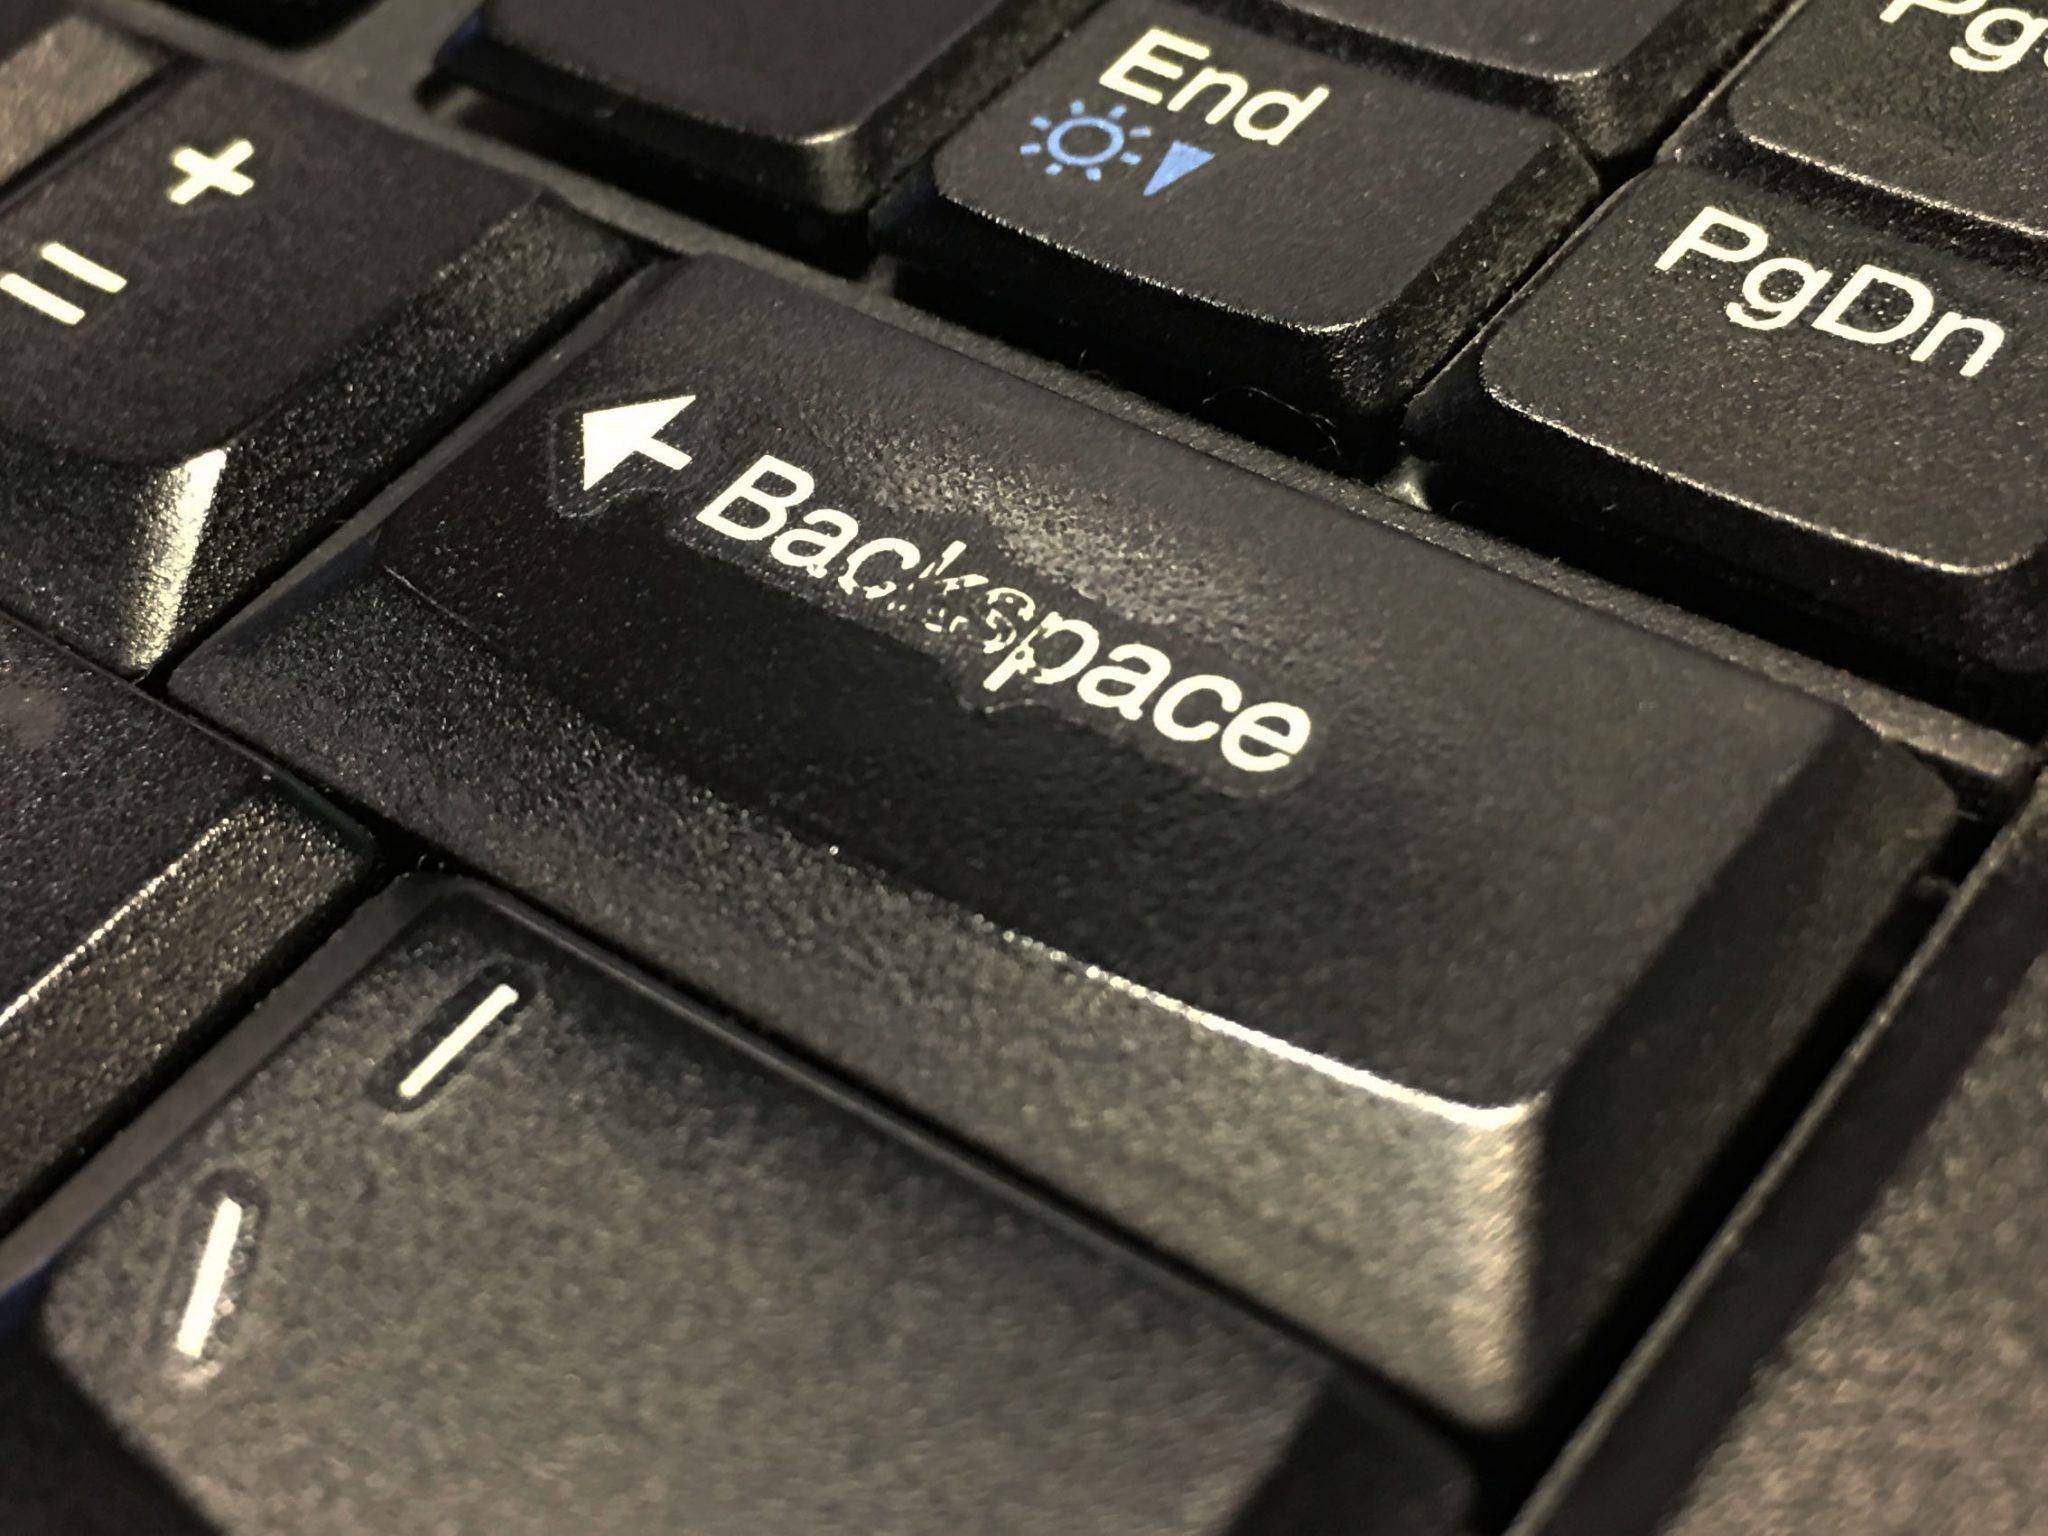 Бэкспейс на клавиатуре что это значит. Кнопка Backspace на клавиатуре. Клавиша бэкспейс на клавиатуре. Кнопка Backspace на клавиатуре ноутбука. Backpack кнопка на клавиатуре.